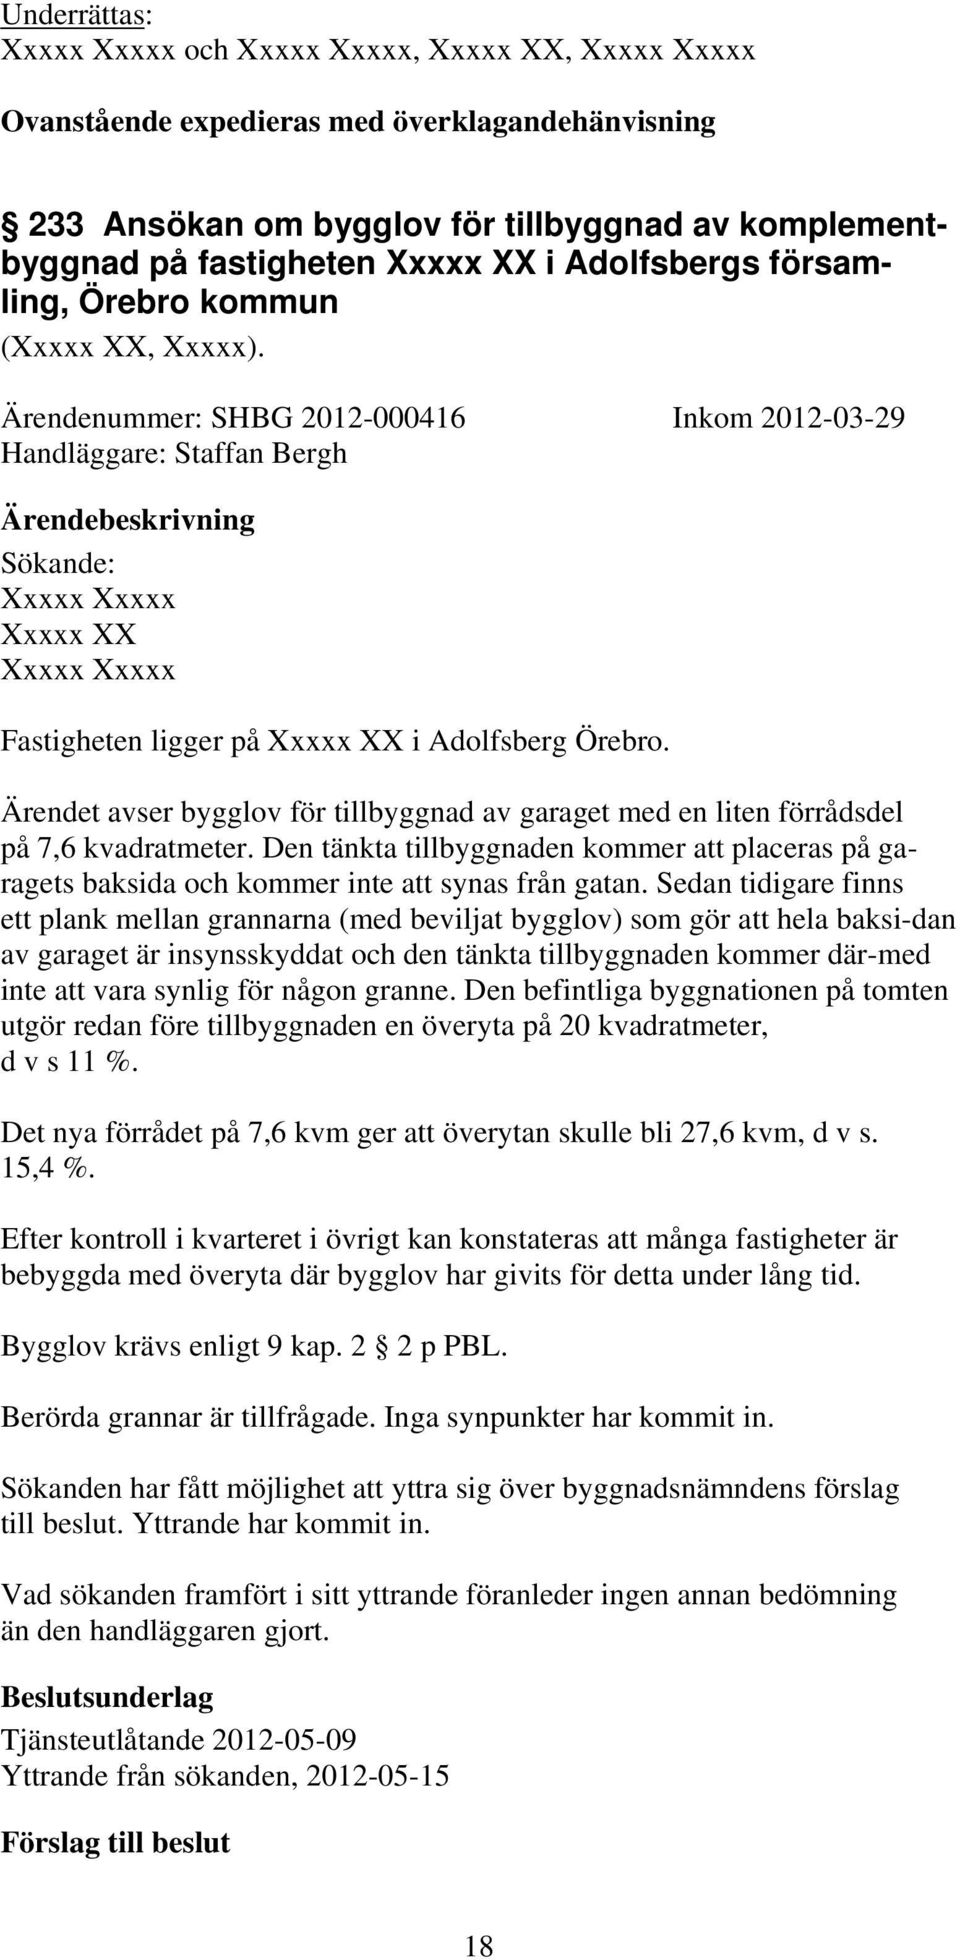 Ärendenummer: SHBG 2012-000416 Inkom 2012-03-29 Handläggare: Staffan Bergh Sökande: Xxxxx Xxxxx Xxxxx XX Xxxxx Xxxxx Fastigheten ligger på Xxxxx XX i Adolfsberg Örebro.